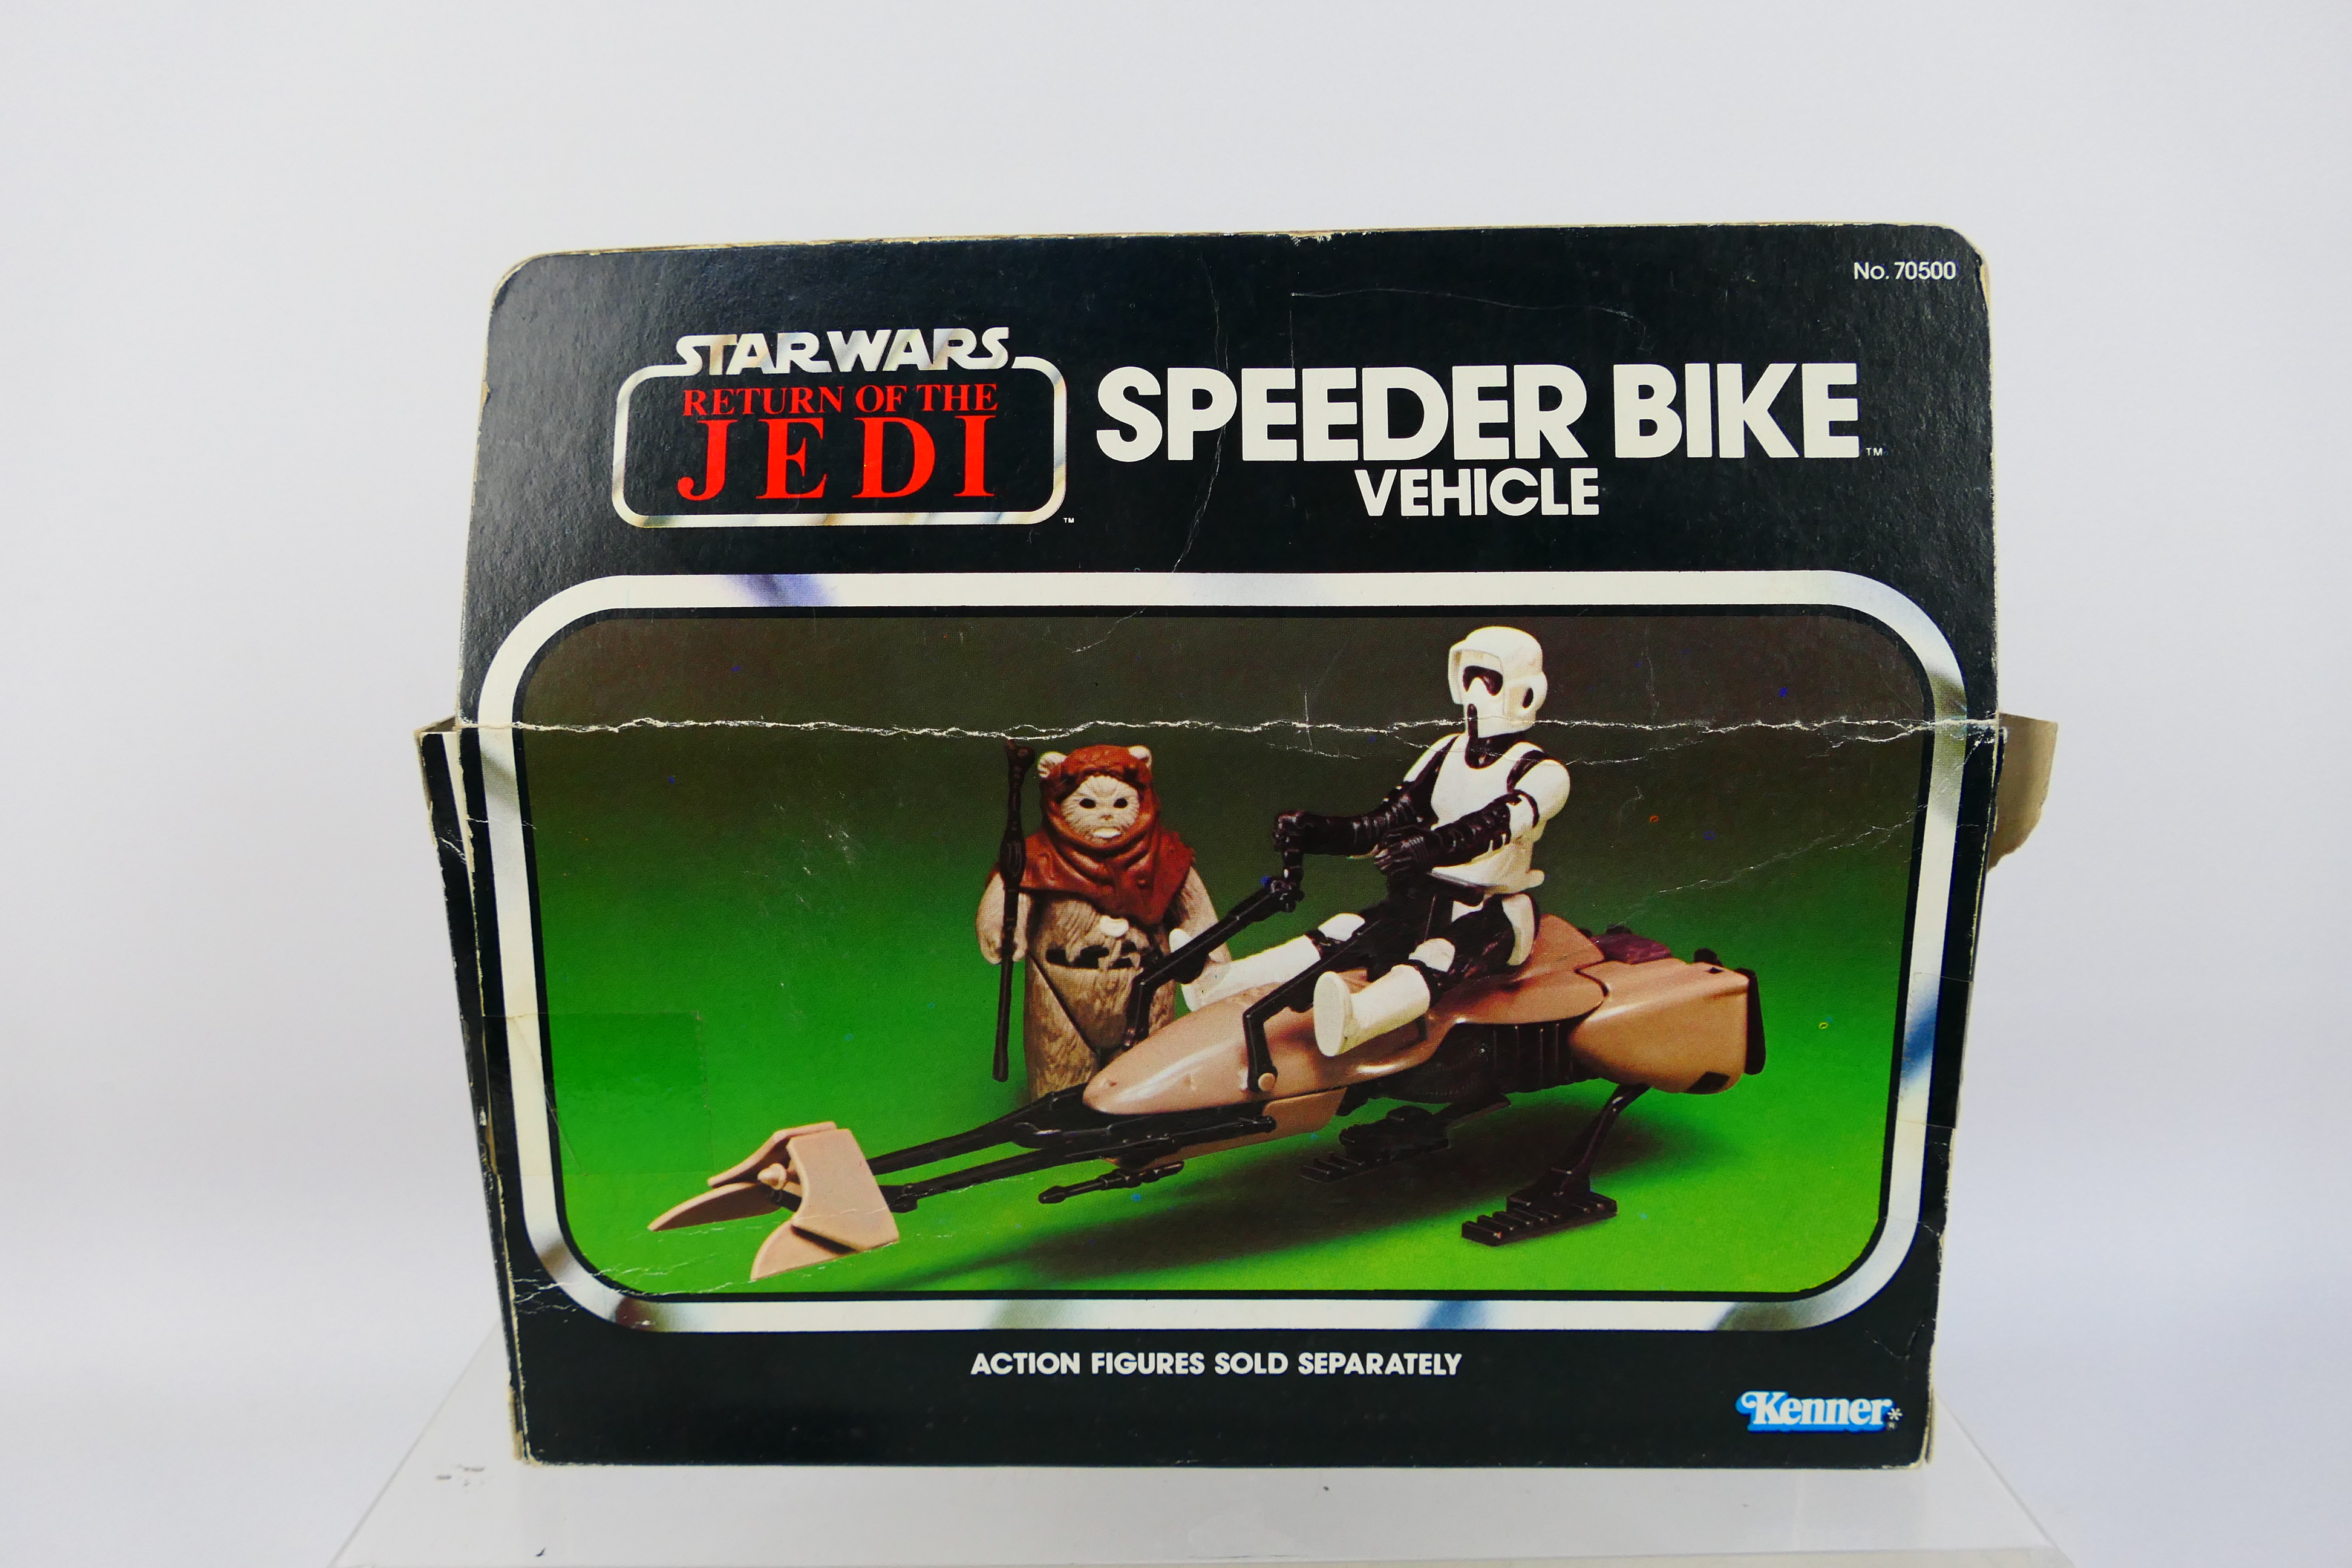 Kenner - Star Wars - A Star Wars Return of the Jedi Speeder Bike Vehicle(70500). - Image 5 of 6